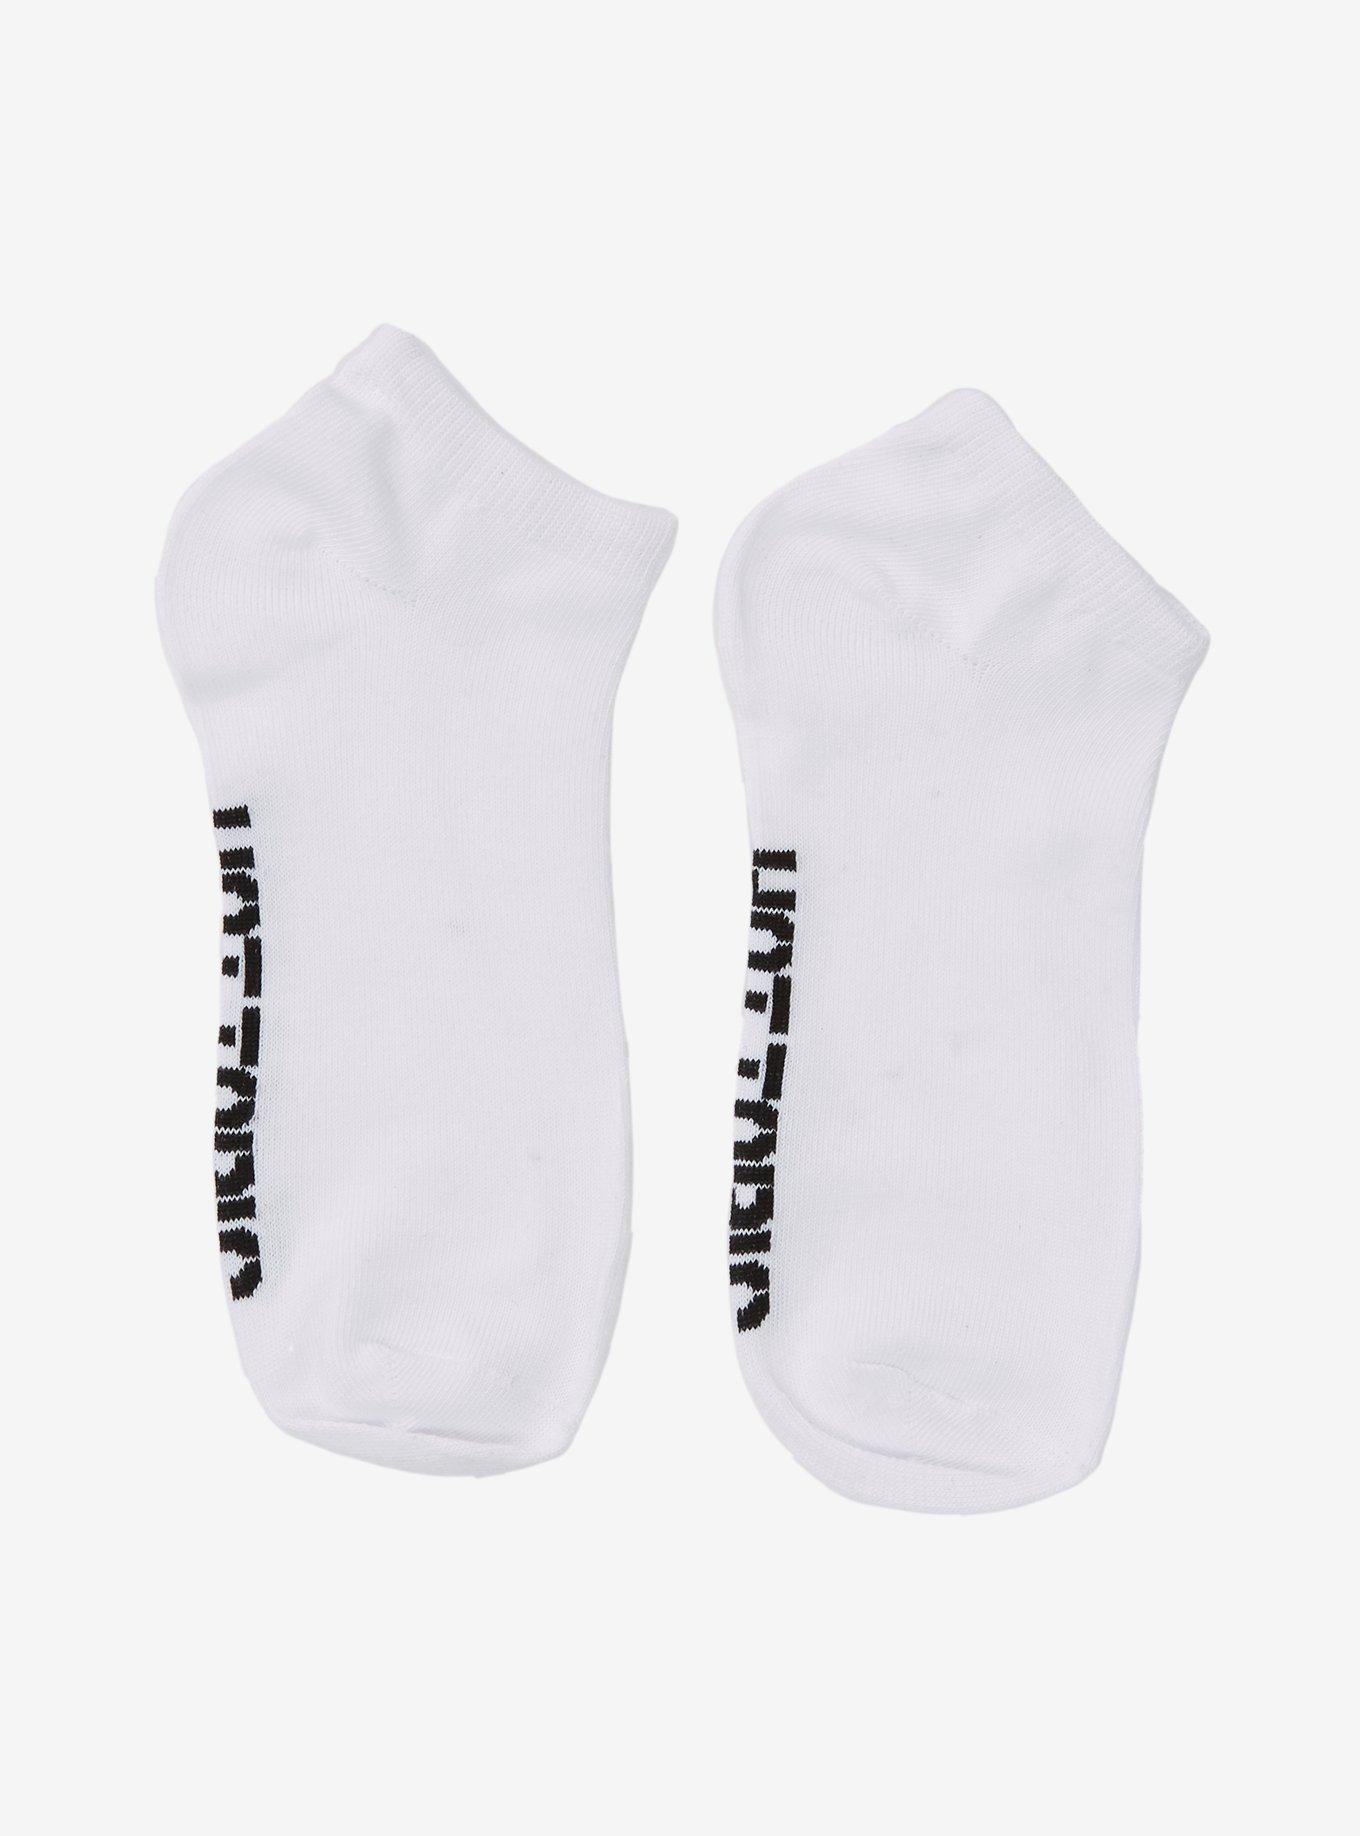 Hot Topic White Ankle Socks, , alternate